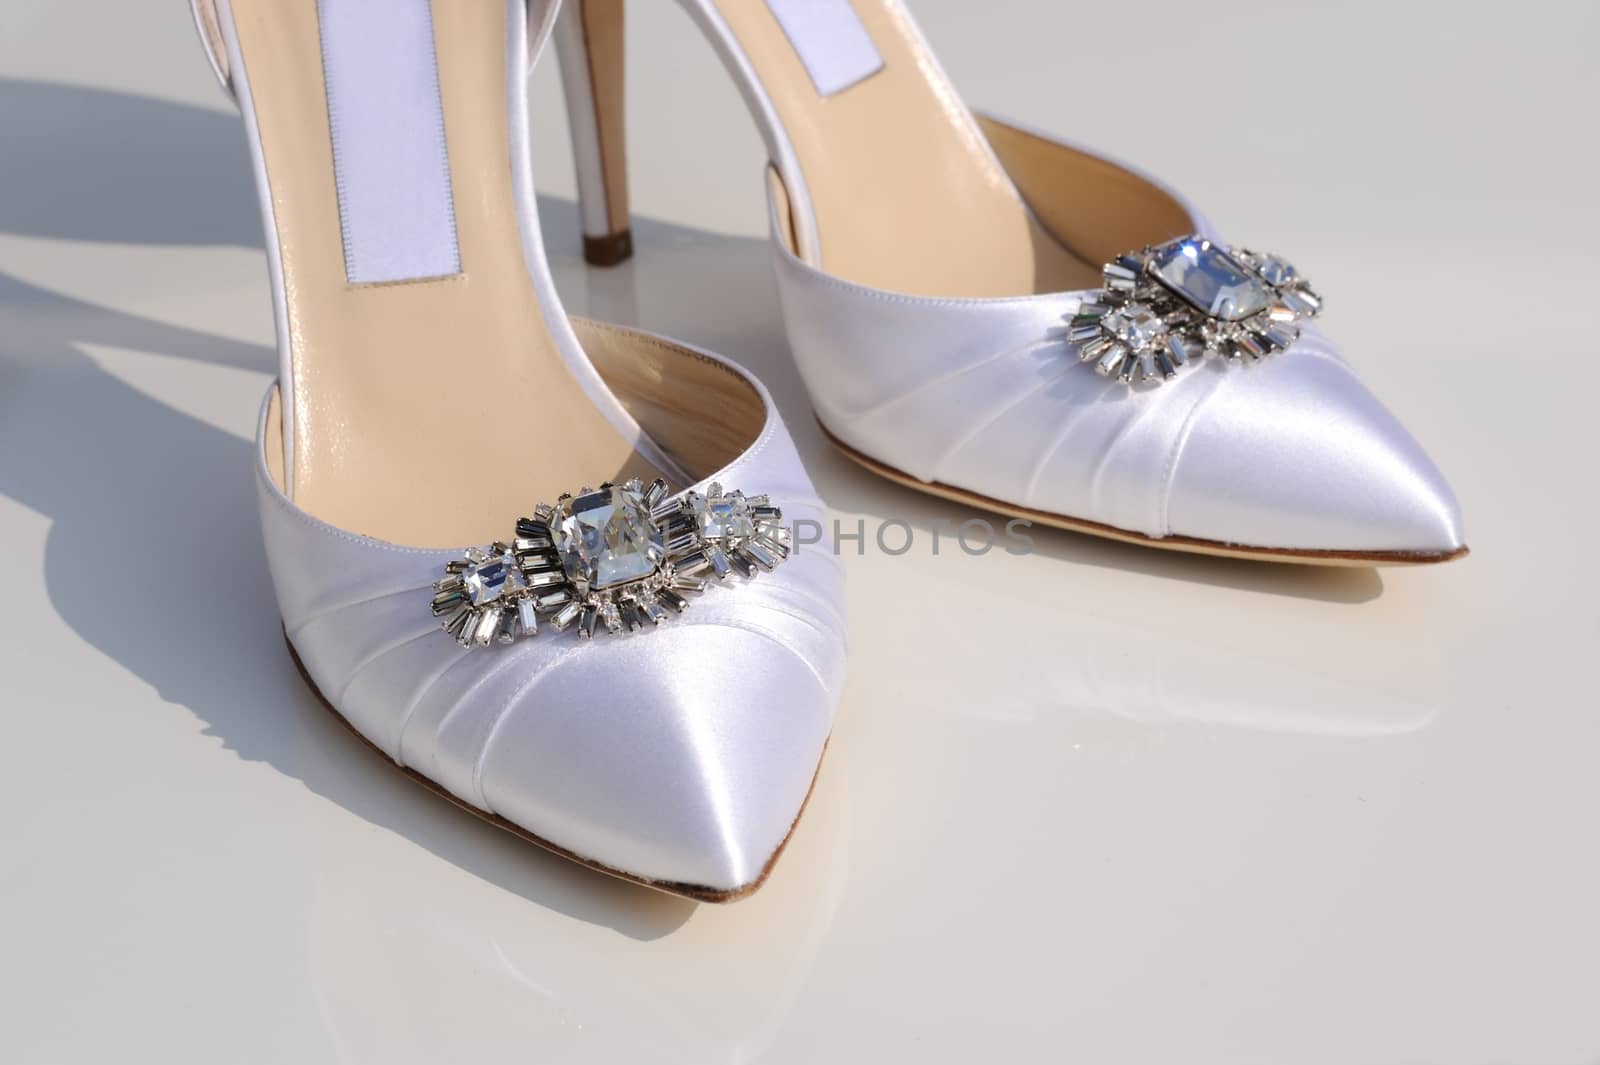 Brides shoe details closeup